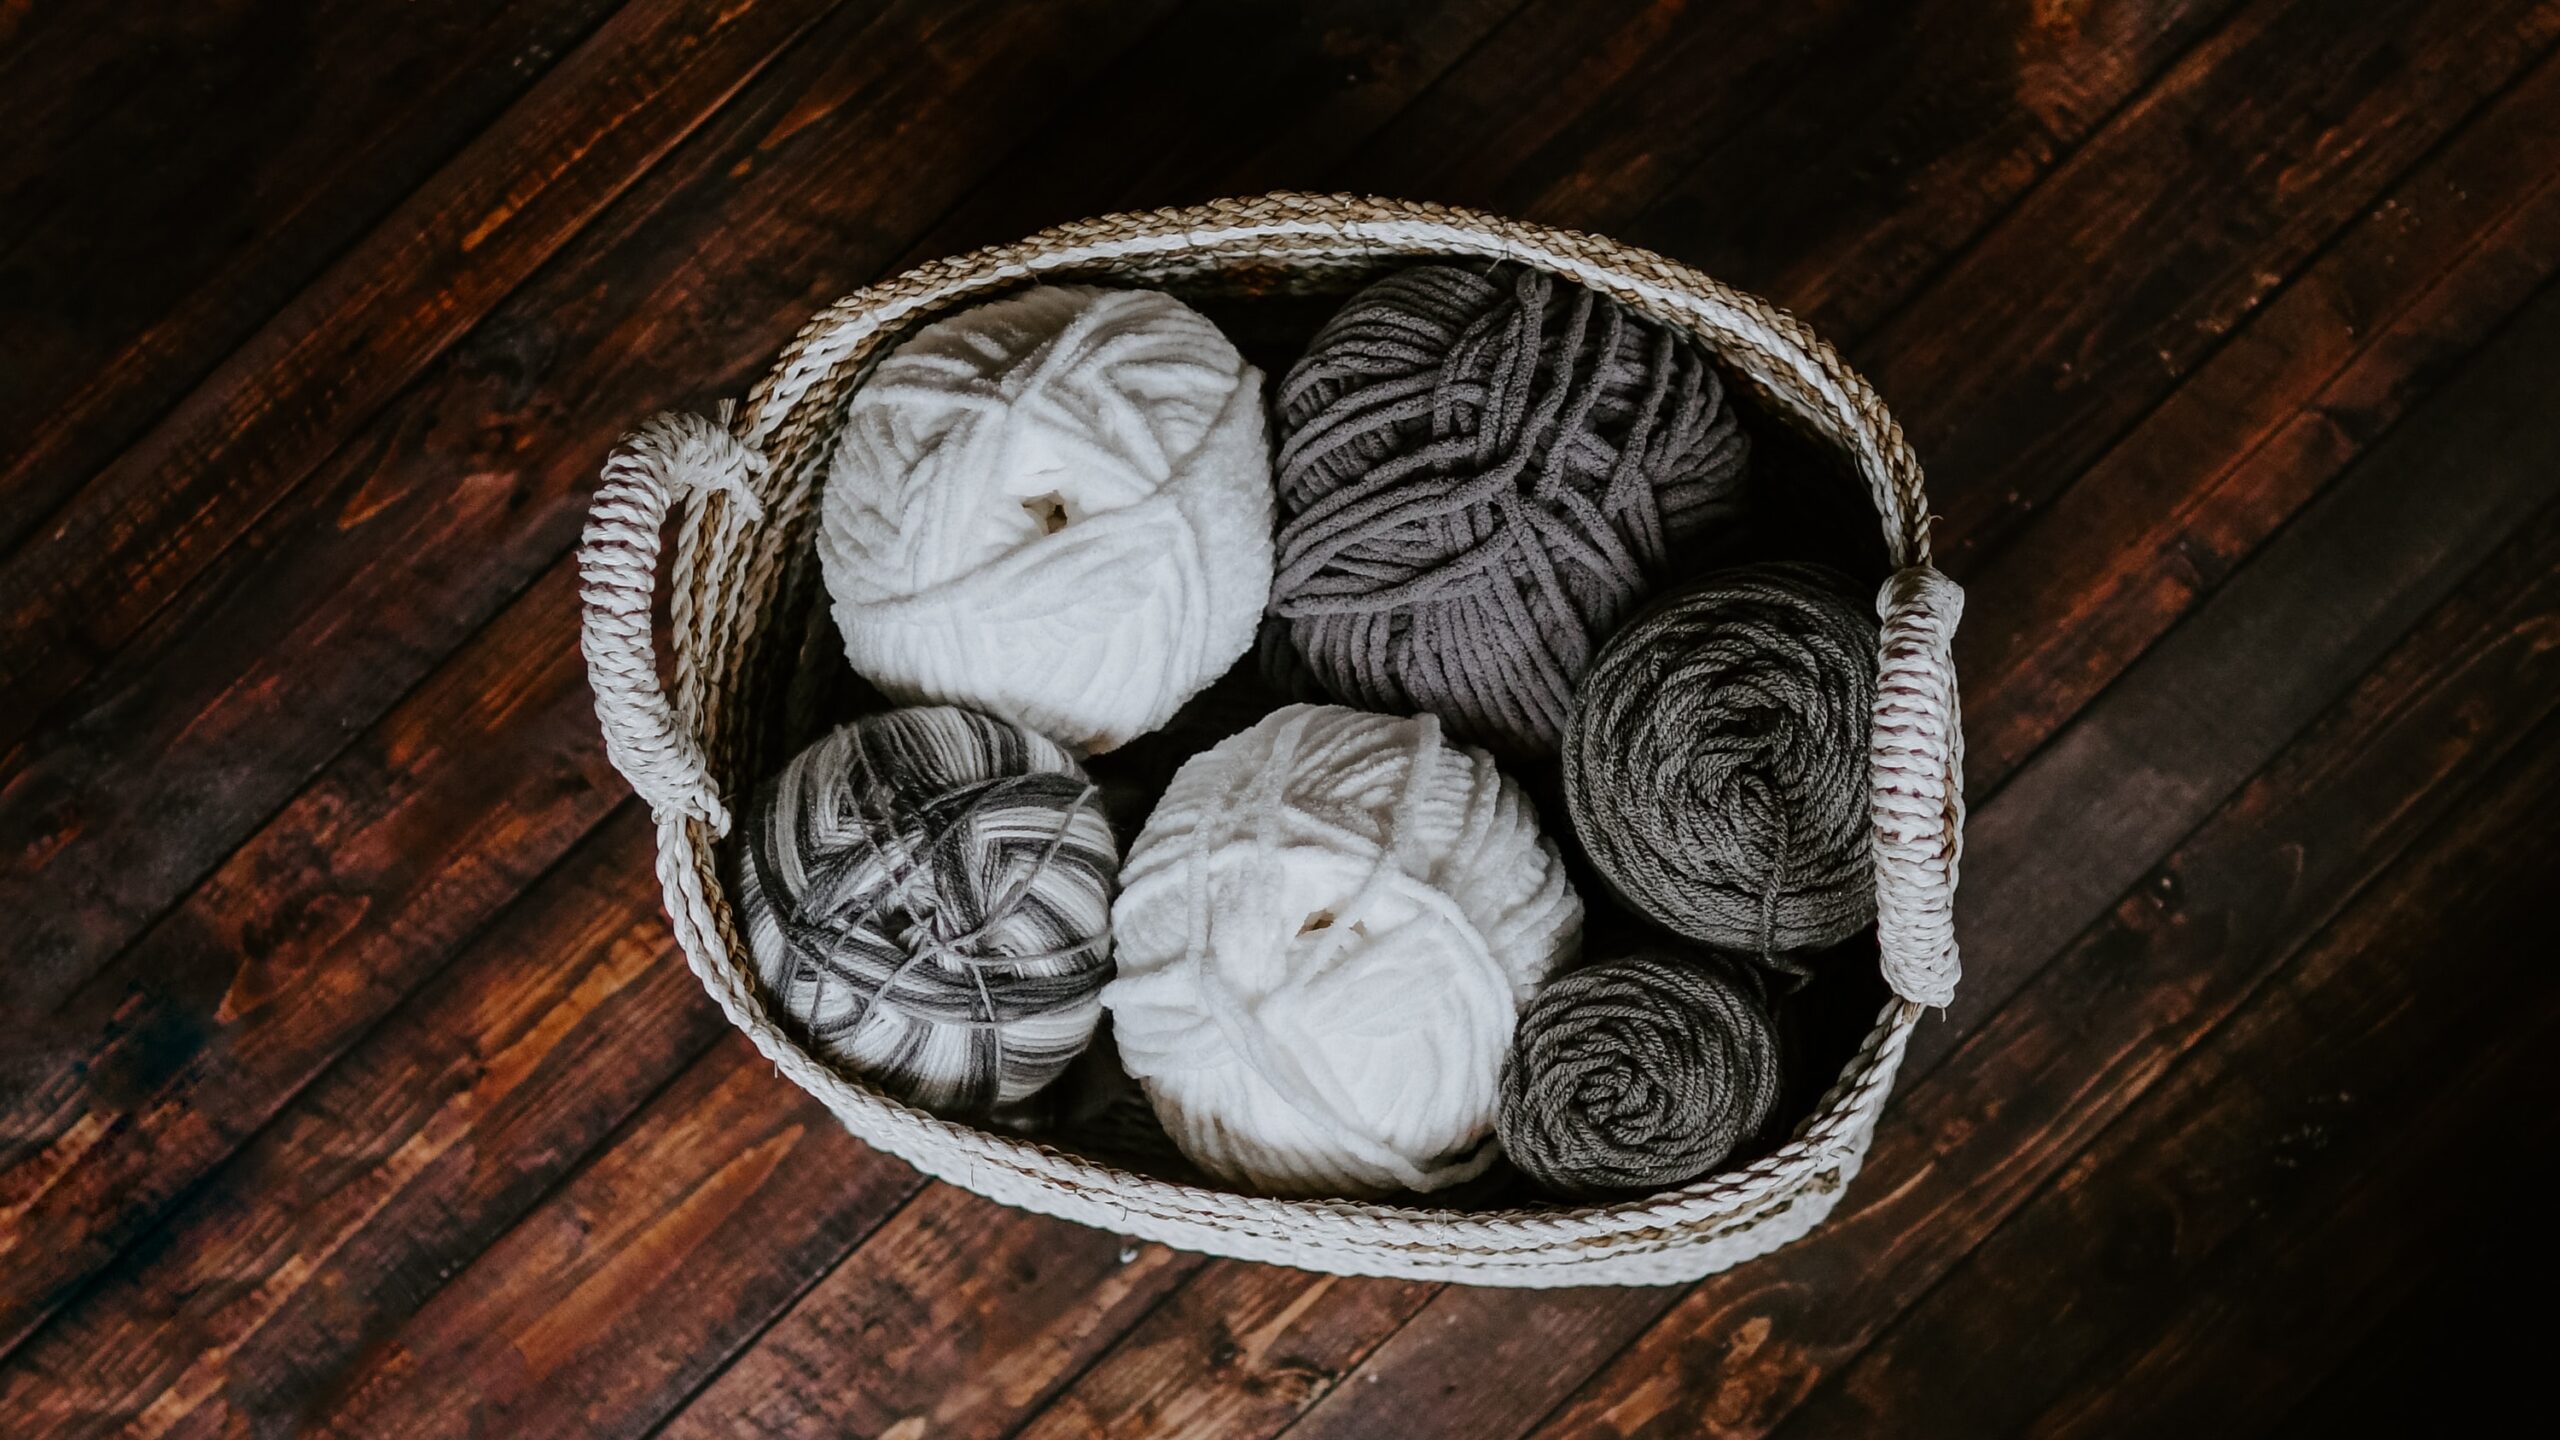 Balls of yarn in a basket